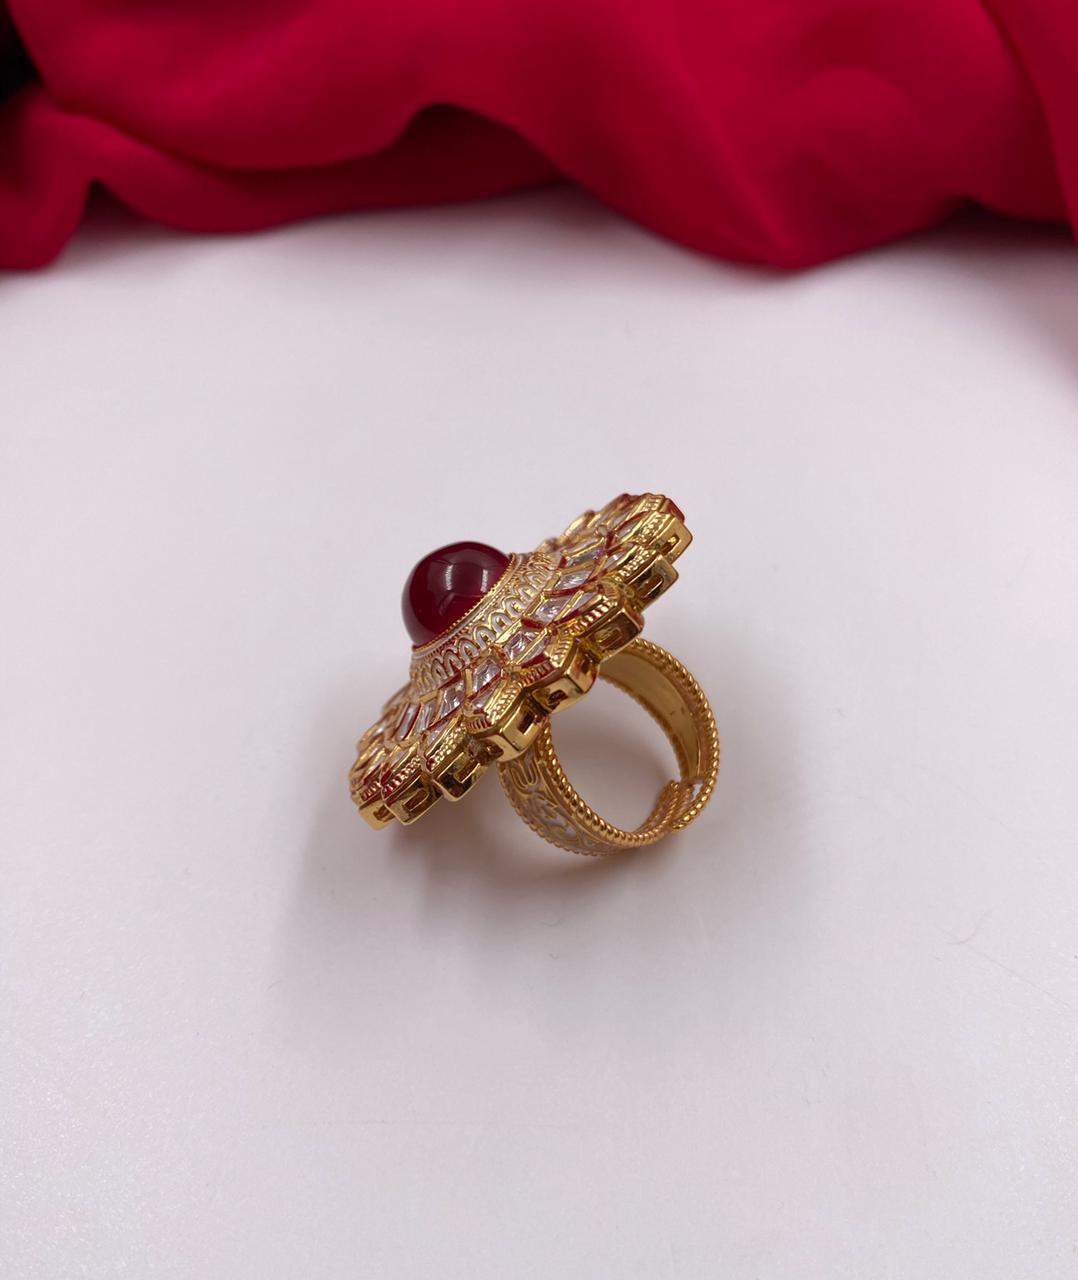 Alloy Golden Elegant finger ring set, Adjustable at Rs 75 in Ghaziabad